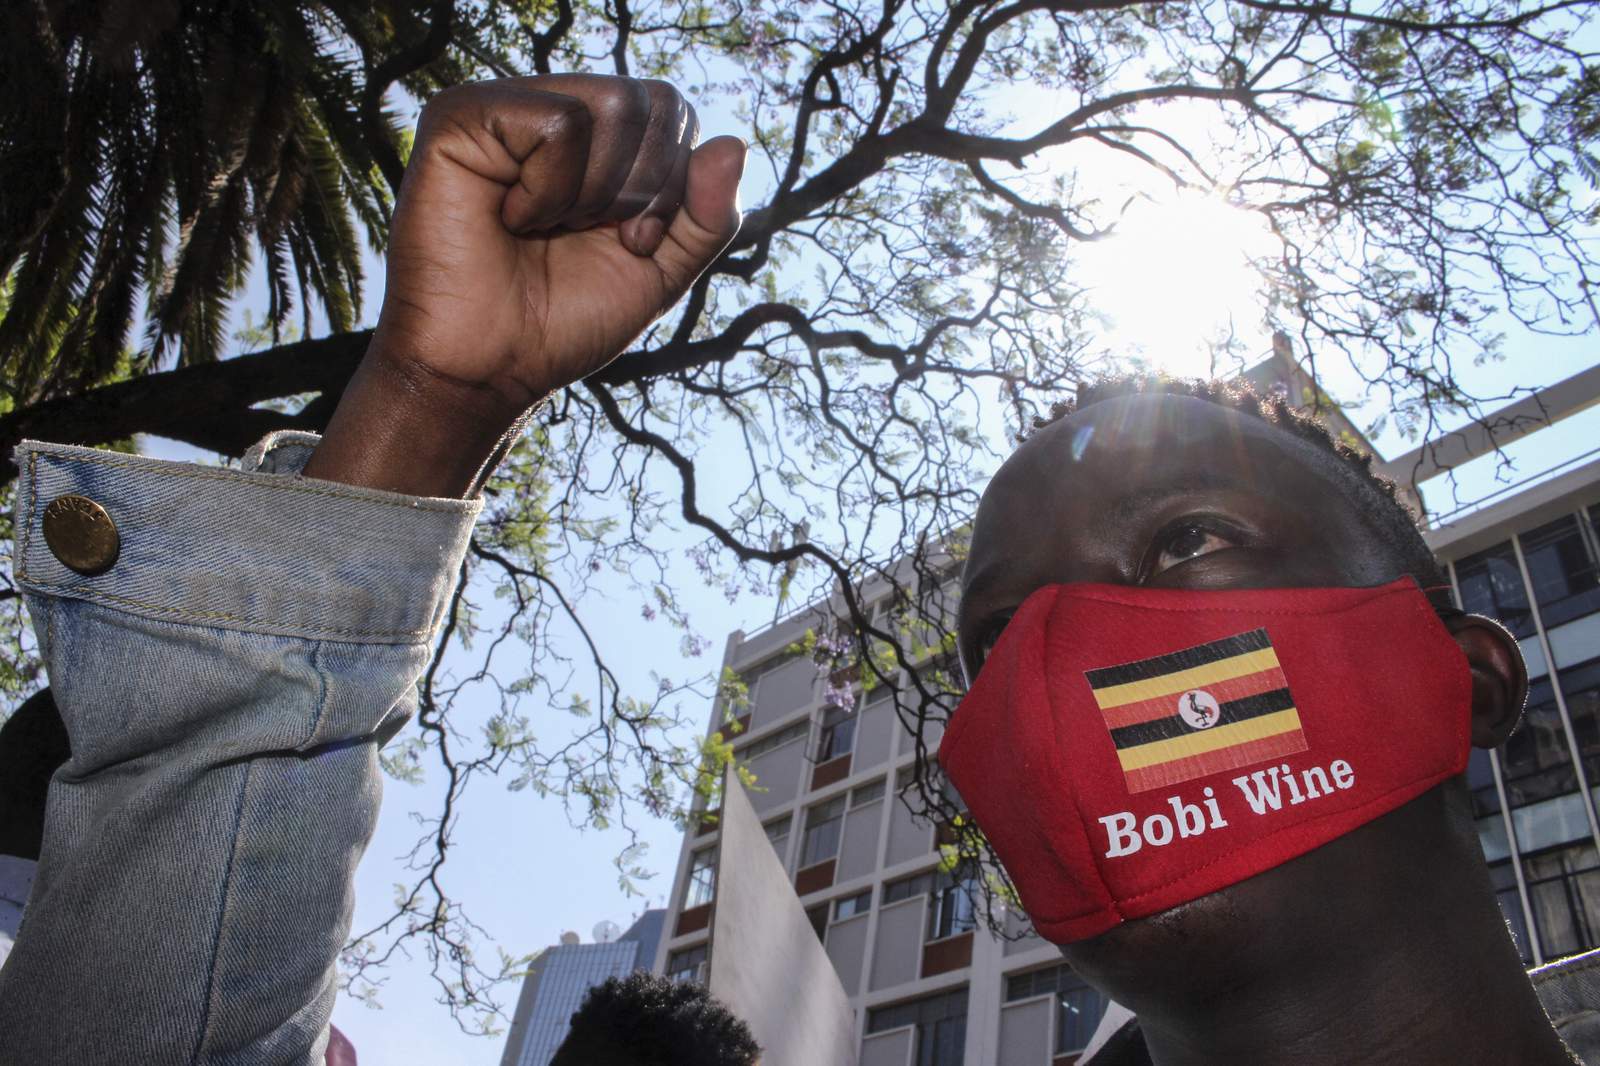 Death toll now 16 in Uganda's unrest after Bobi Wine arrest